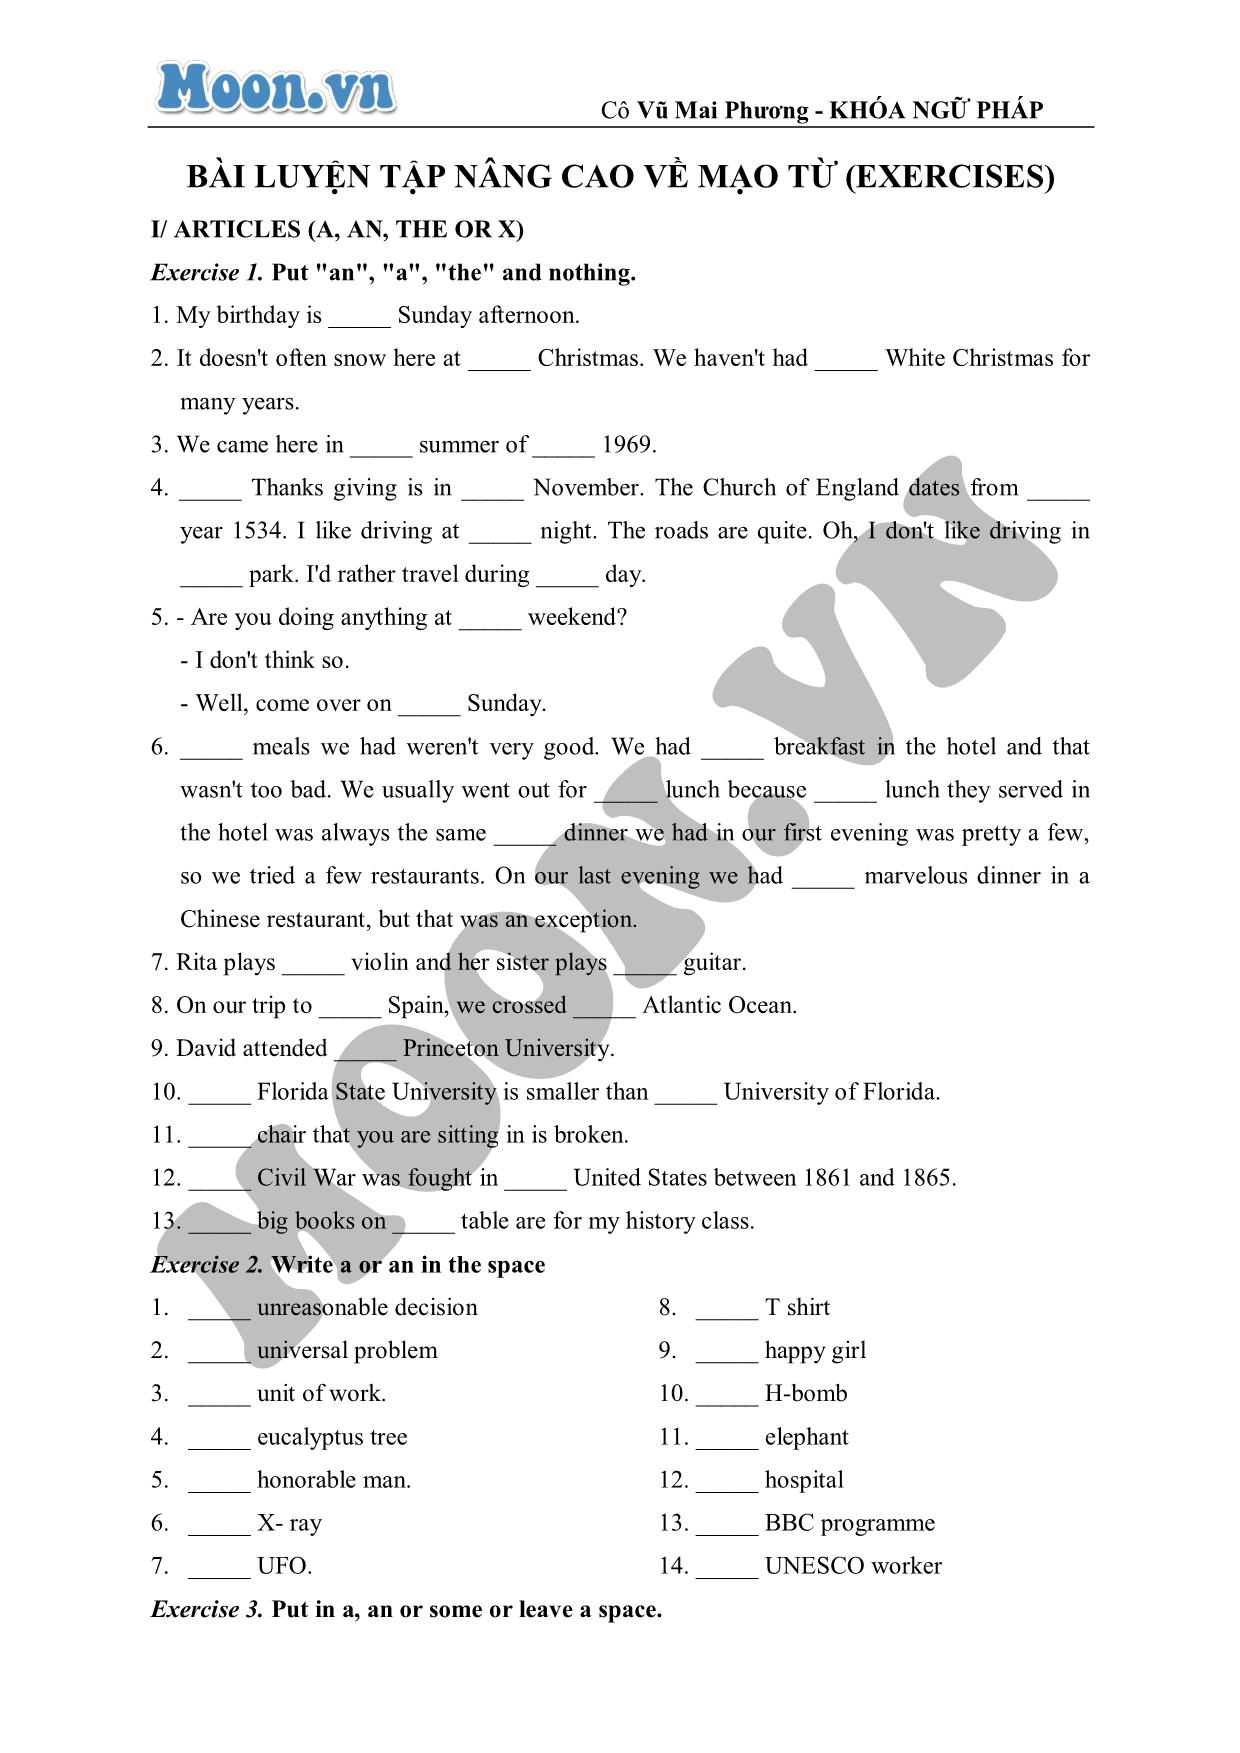 Bài luyện tập nâng cao về mạo từ (exercises) trang 1